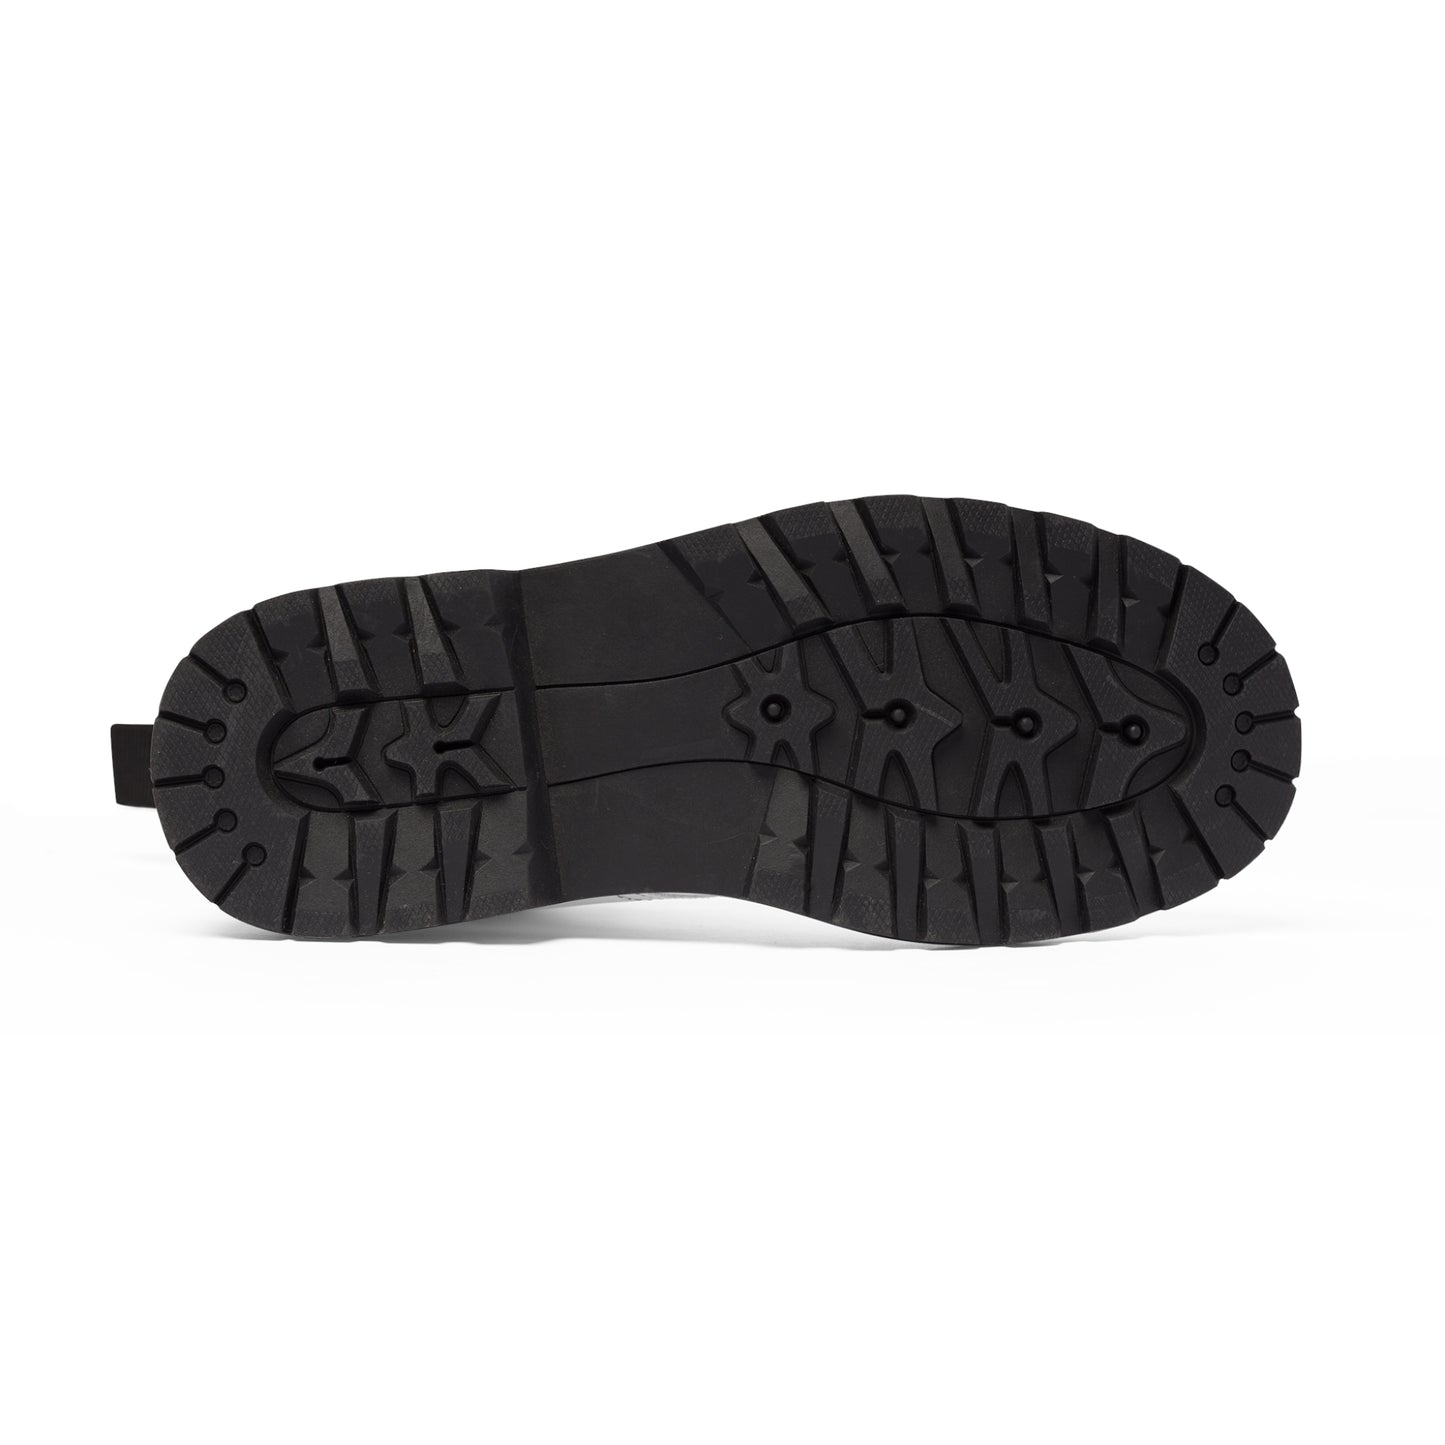 Men's Canvas Boots - 02874 US 10.5 Black sole